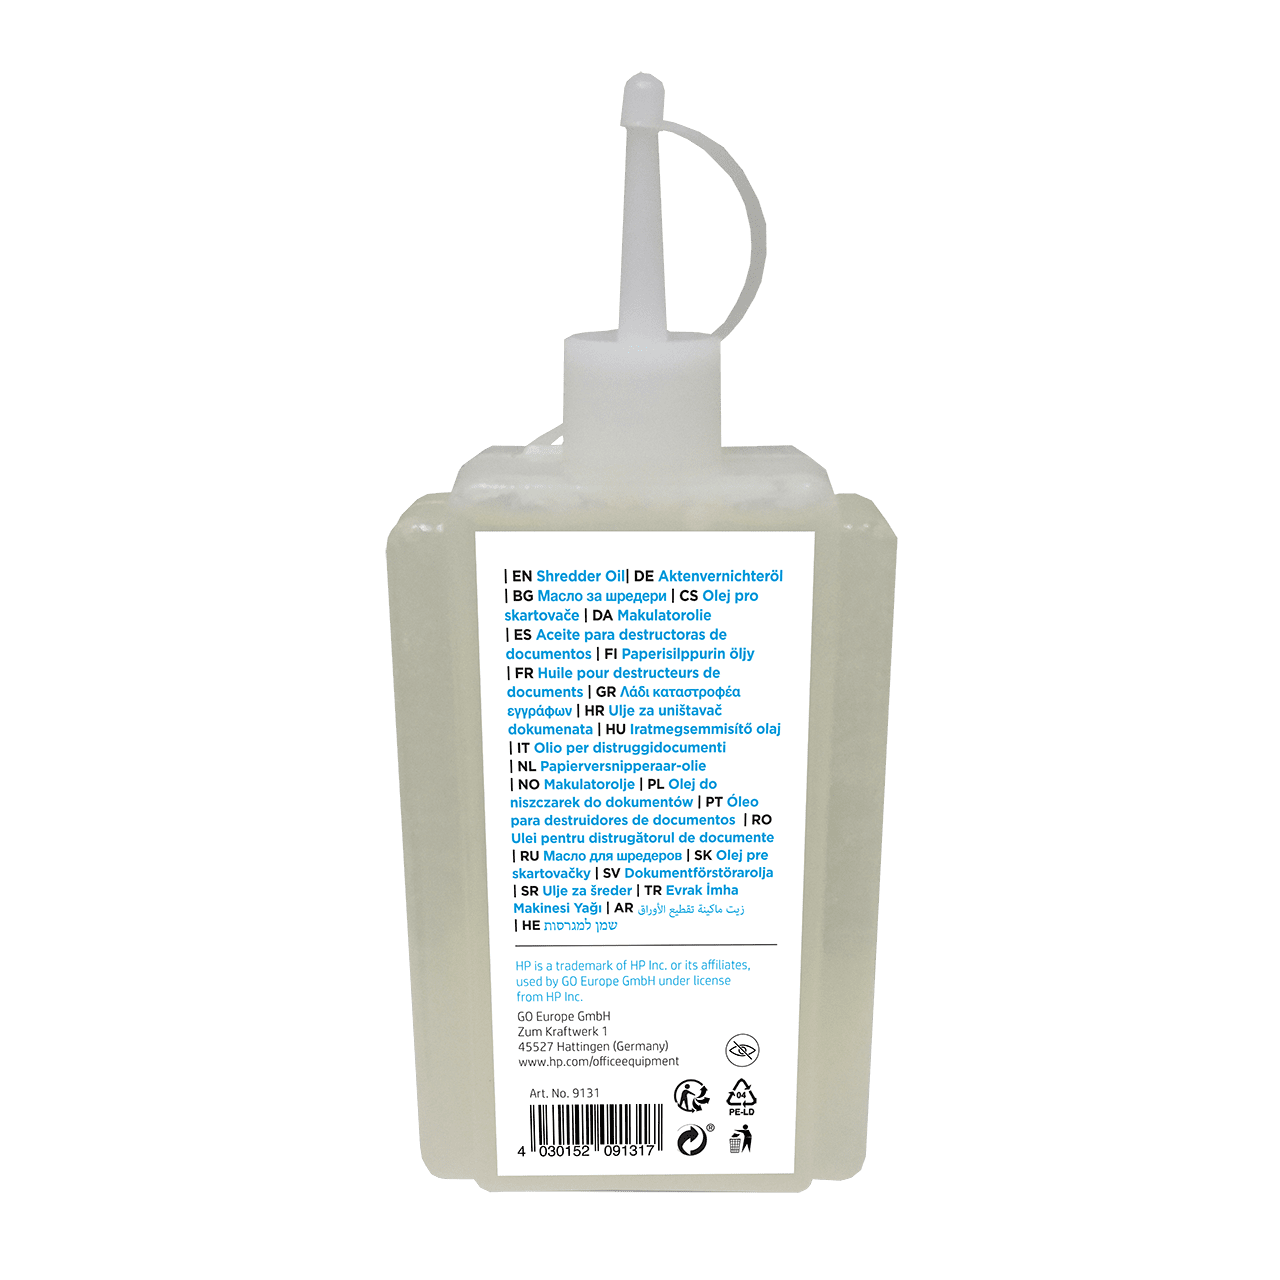 HP shredder oil, 120 ml – GO Europe GmbH